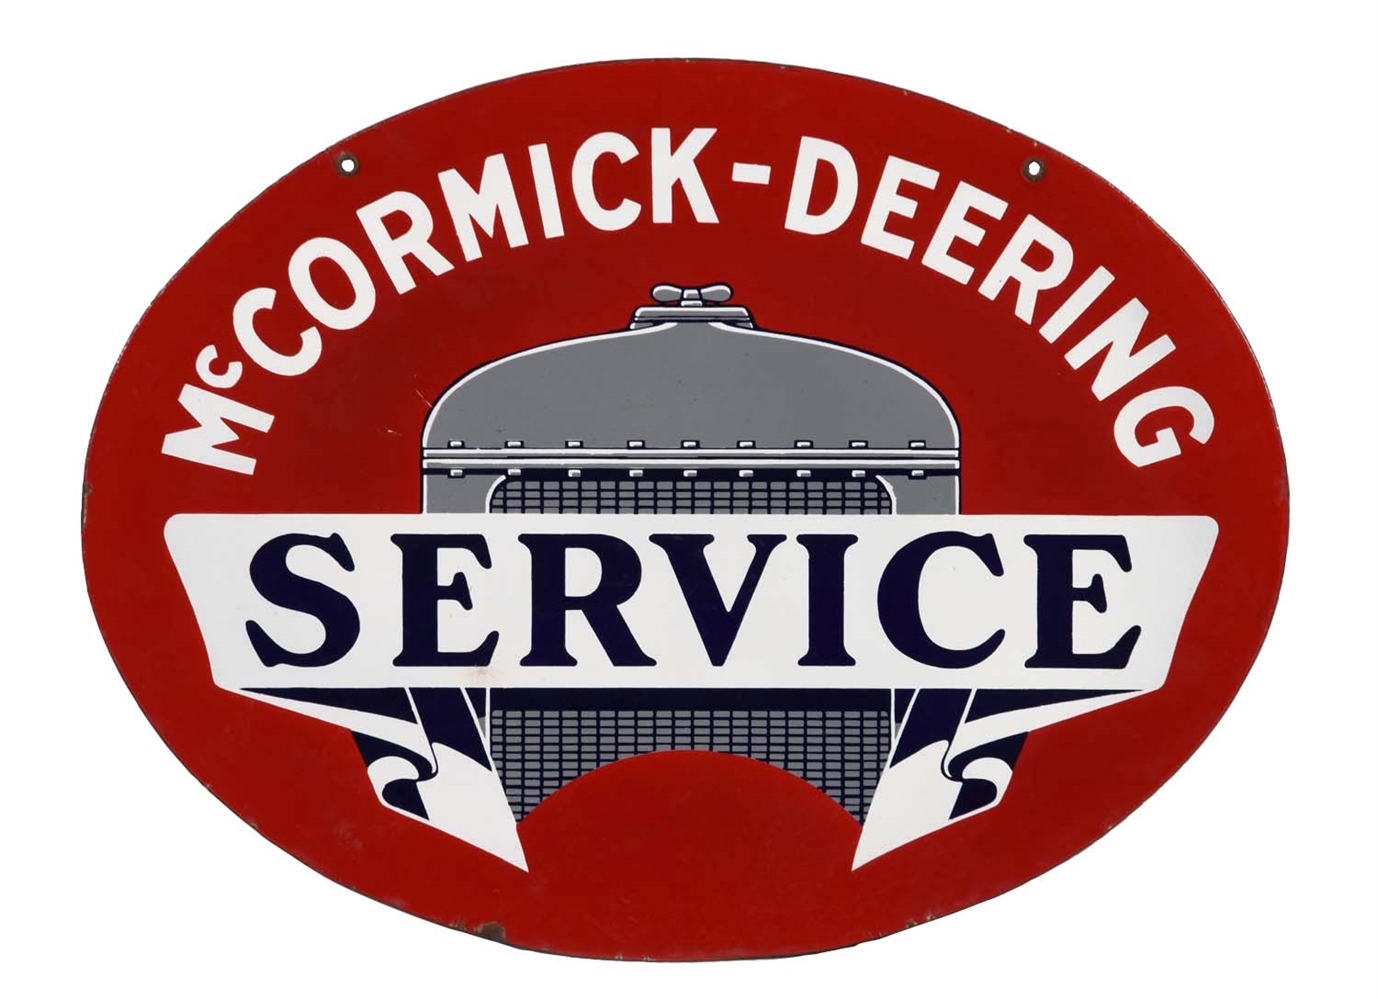 MCCORMICK-DEERING SERVICE W/LOGO OVAL PORCELAIN SIGN.            